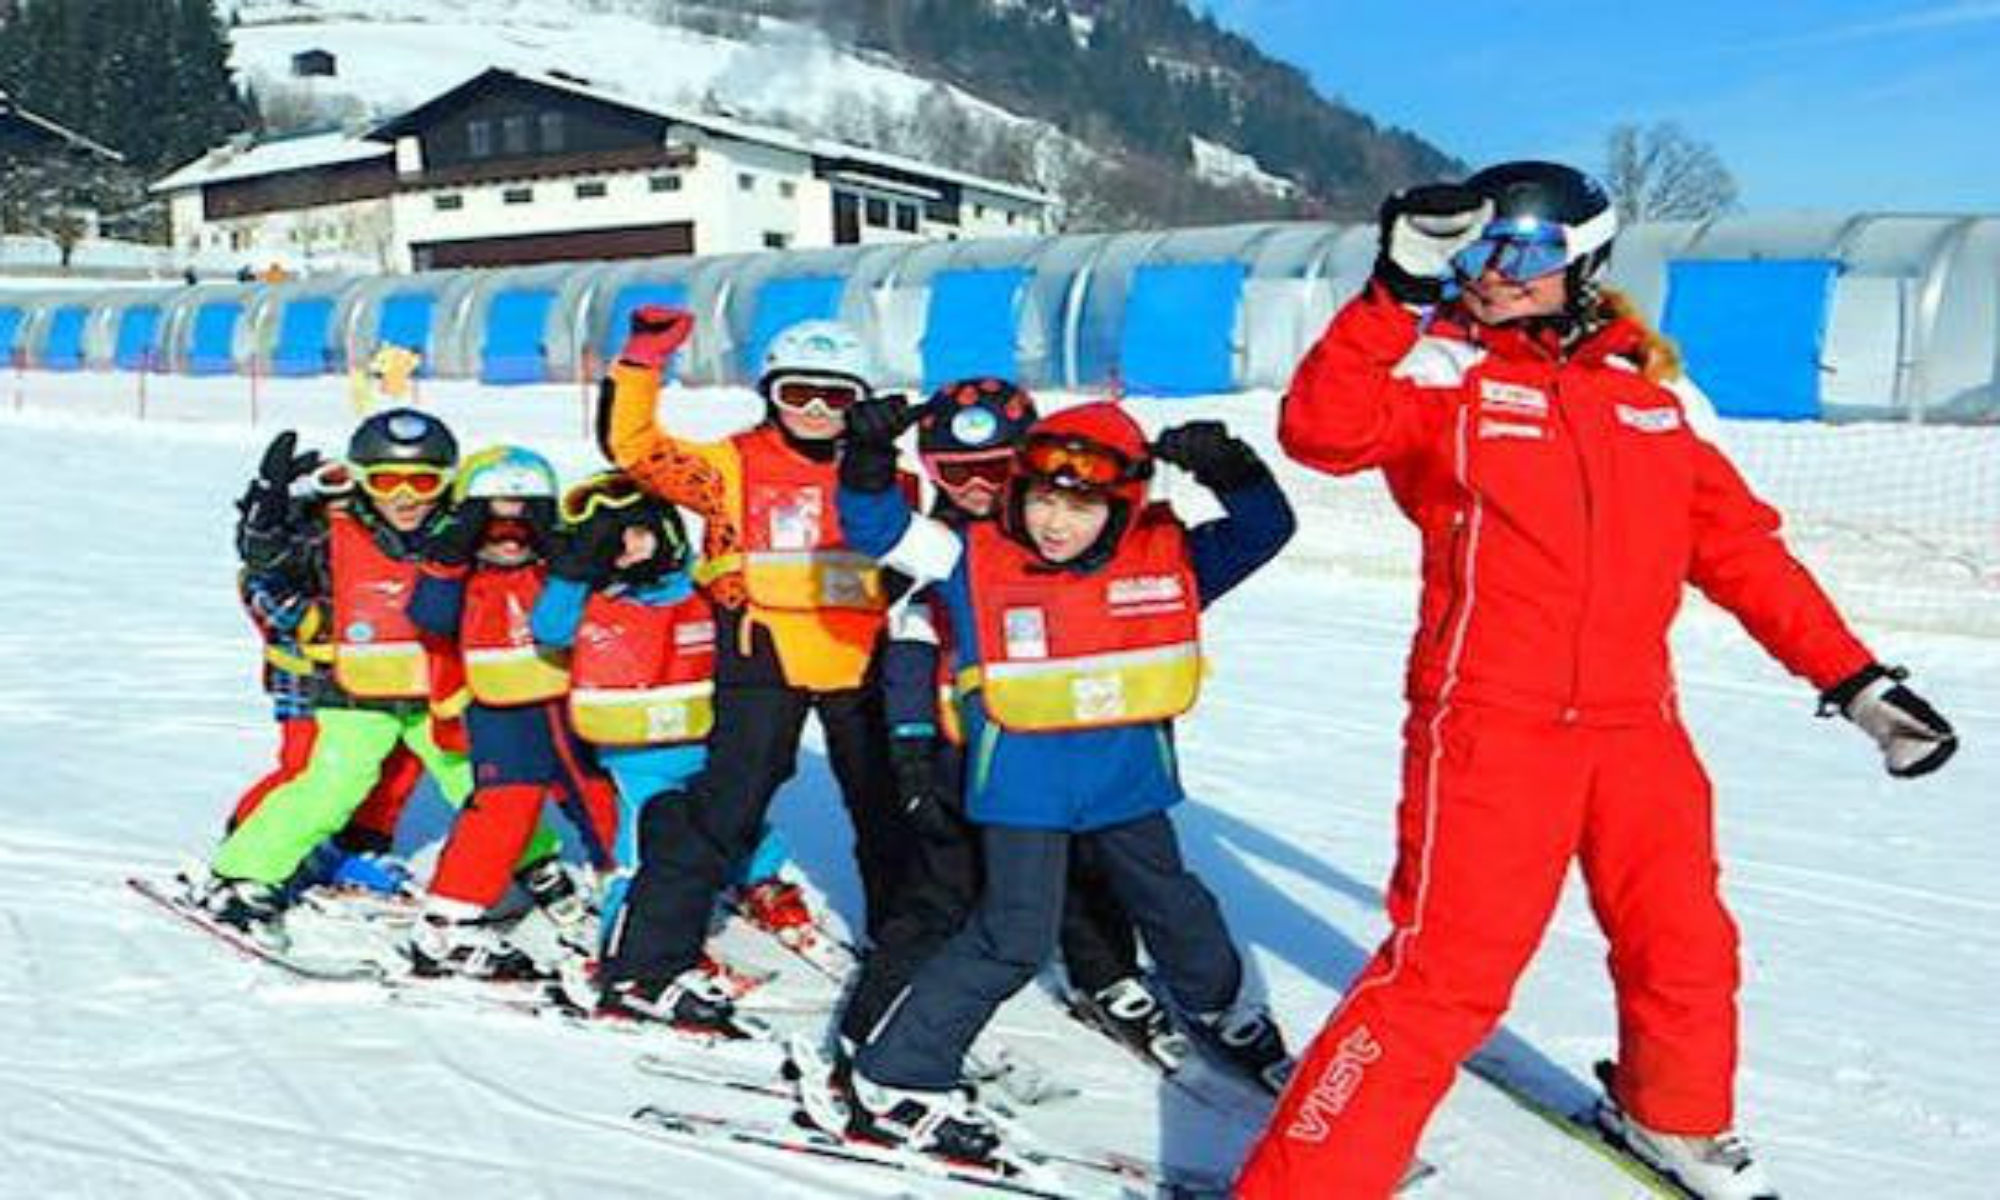  Een groepje leerlingen volgt hun skilerares tijdens een skiles met een van de skischolen in Zell am See.